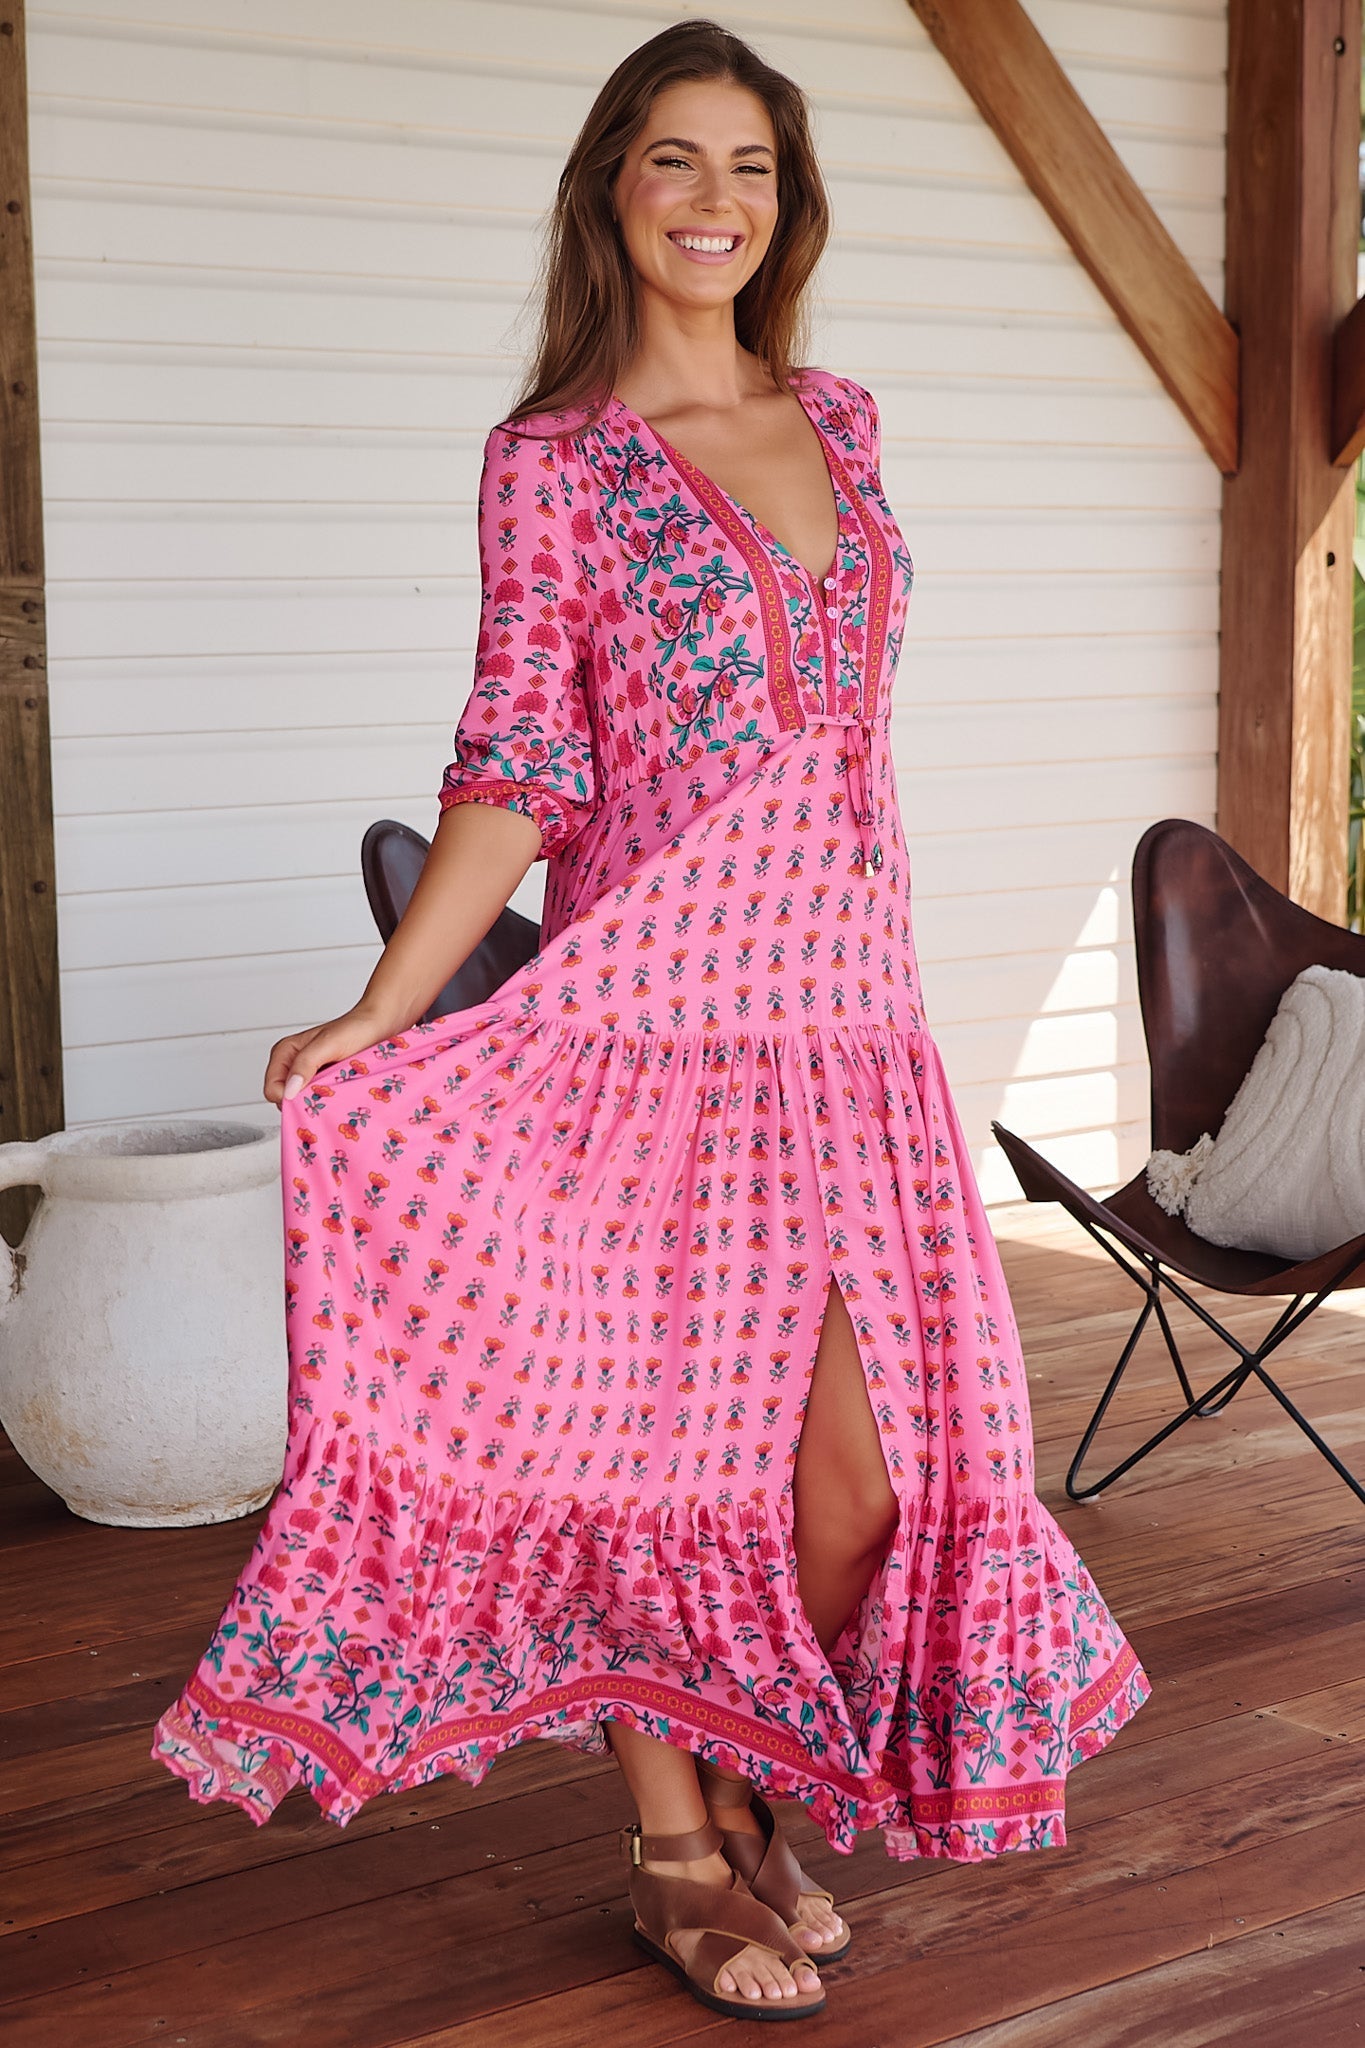 JAASE - Tessa Maxi Dress: A Line Pull Tie Waist Dress in Raspberry Romance Print